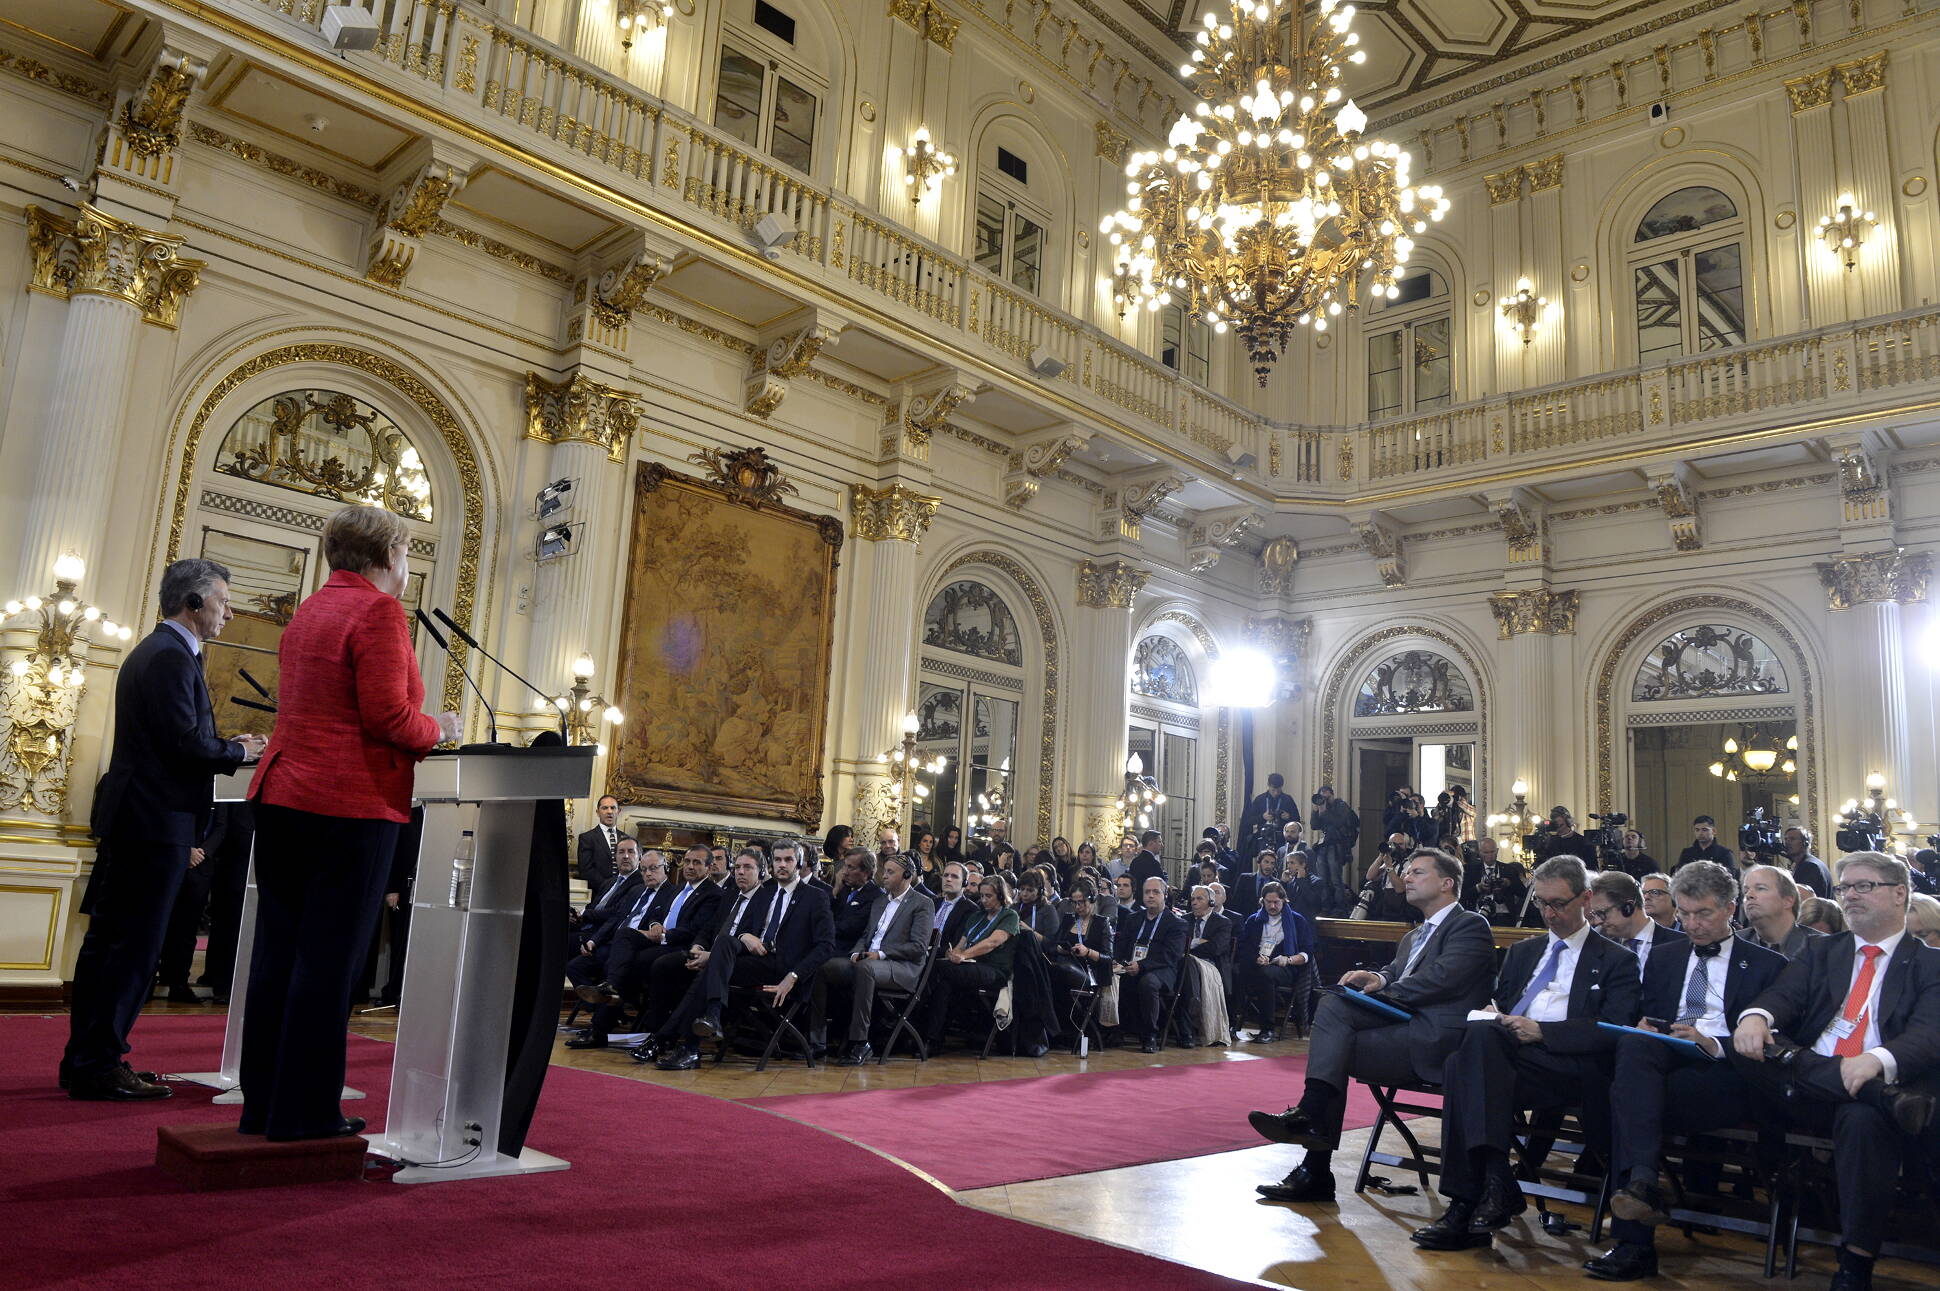 Macri y Merkel acordaron fortalecer la relación bilateral y ratificaron la agenda del G-20